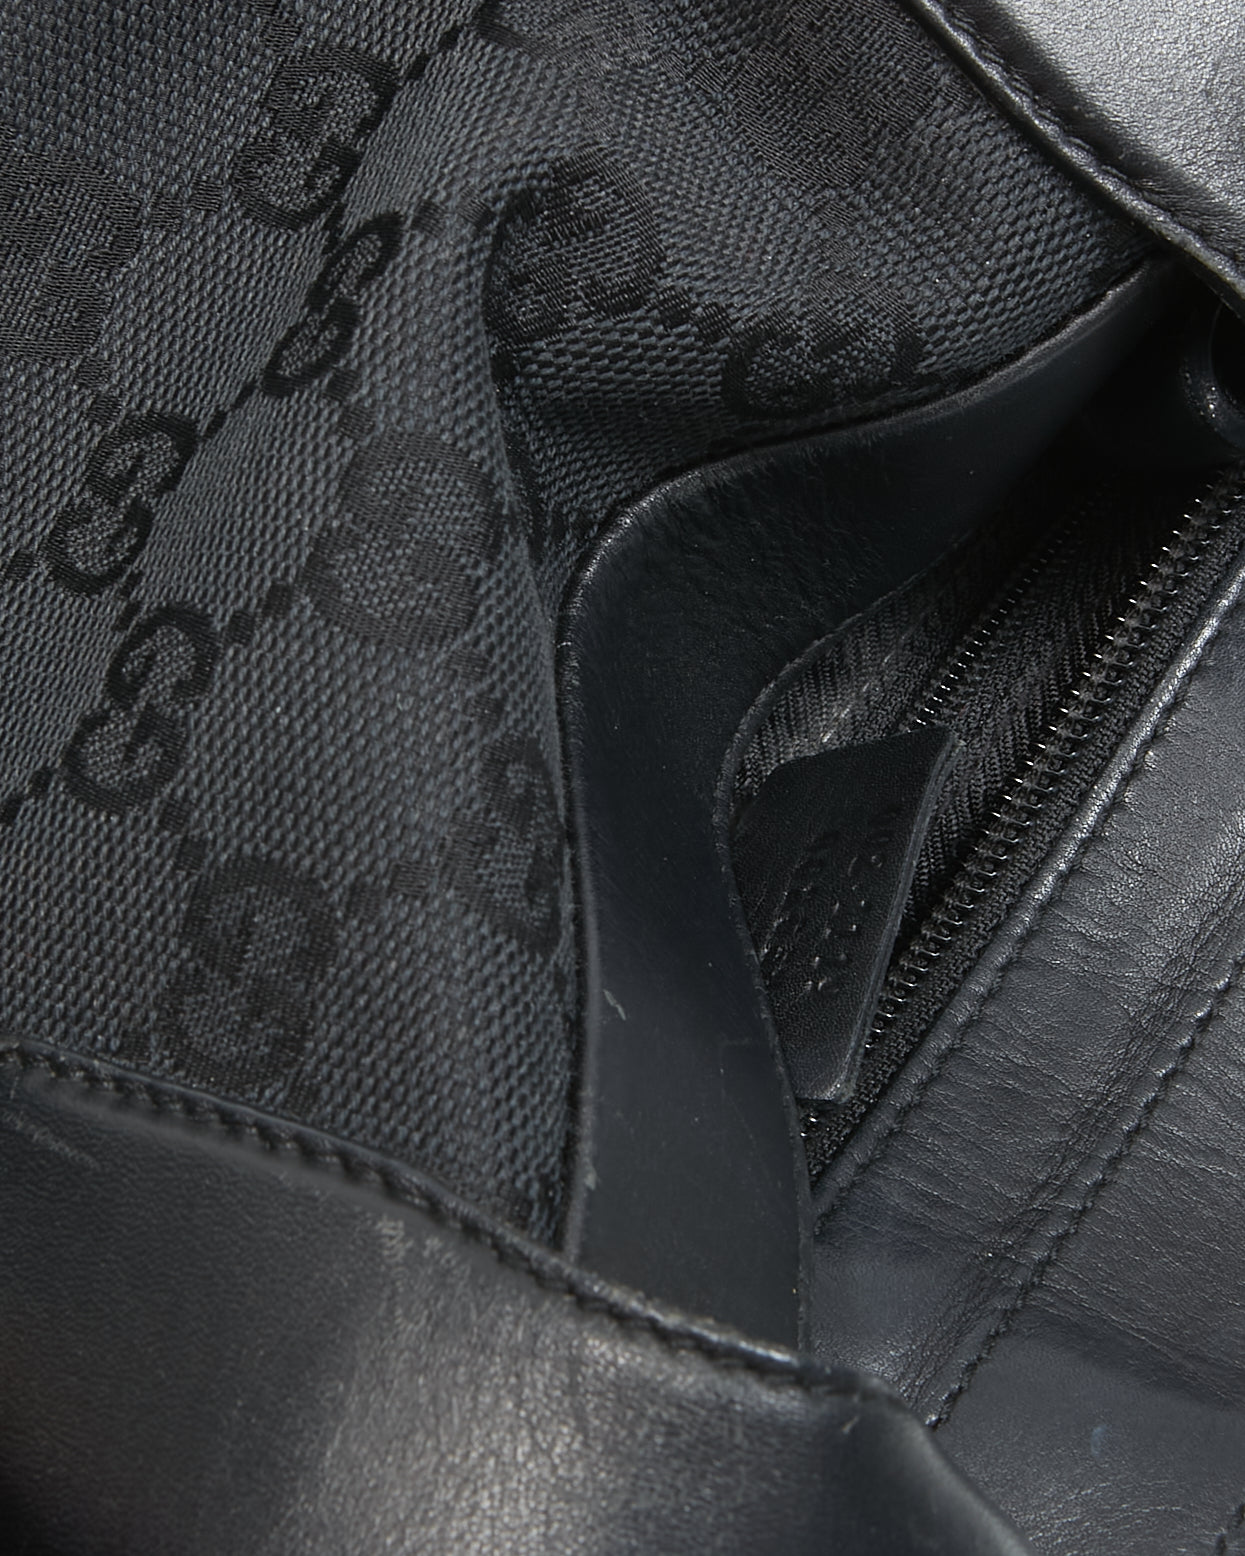 Gucci Black GG Supreme Monogram Canvas Leather Detail Tote